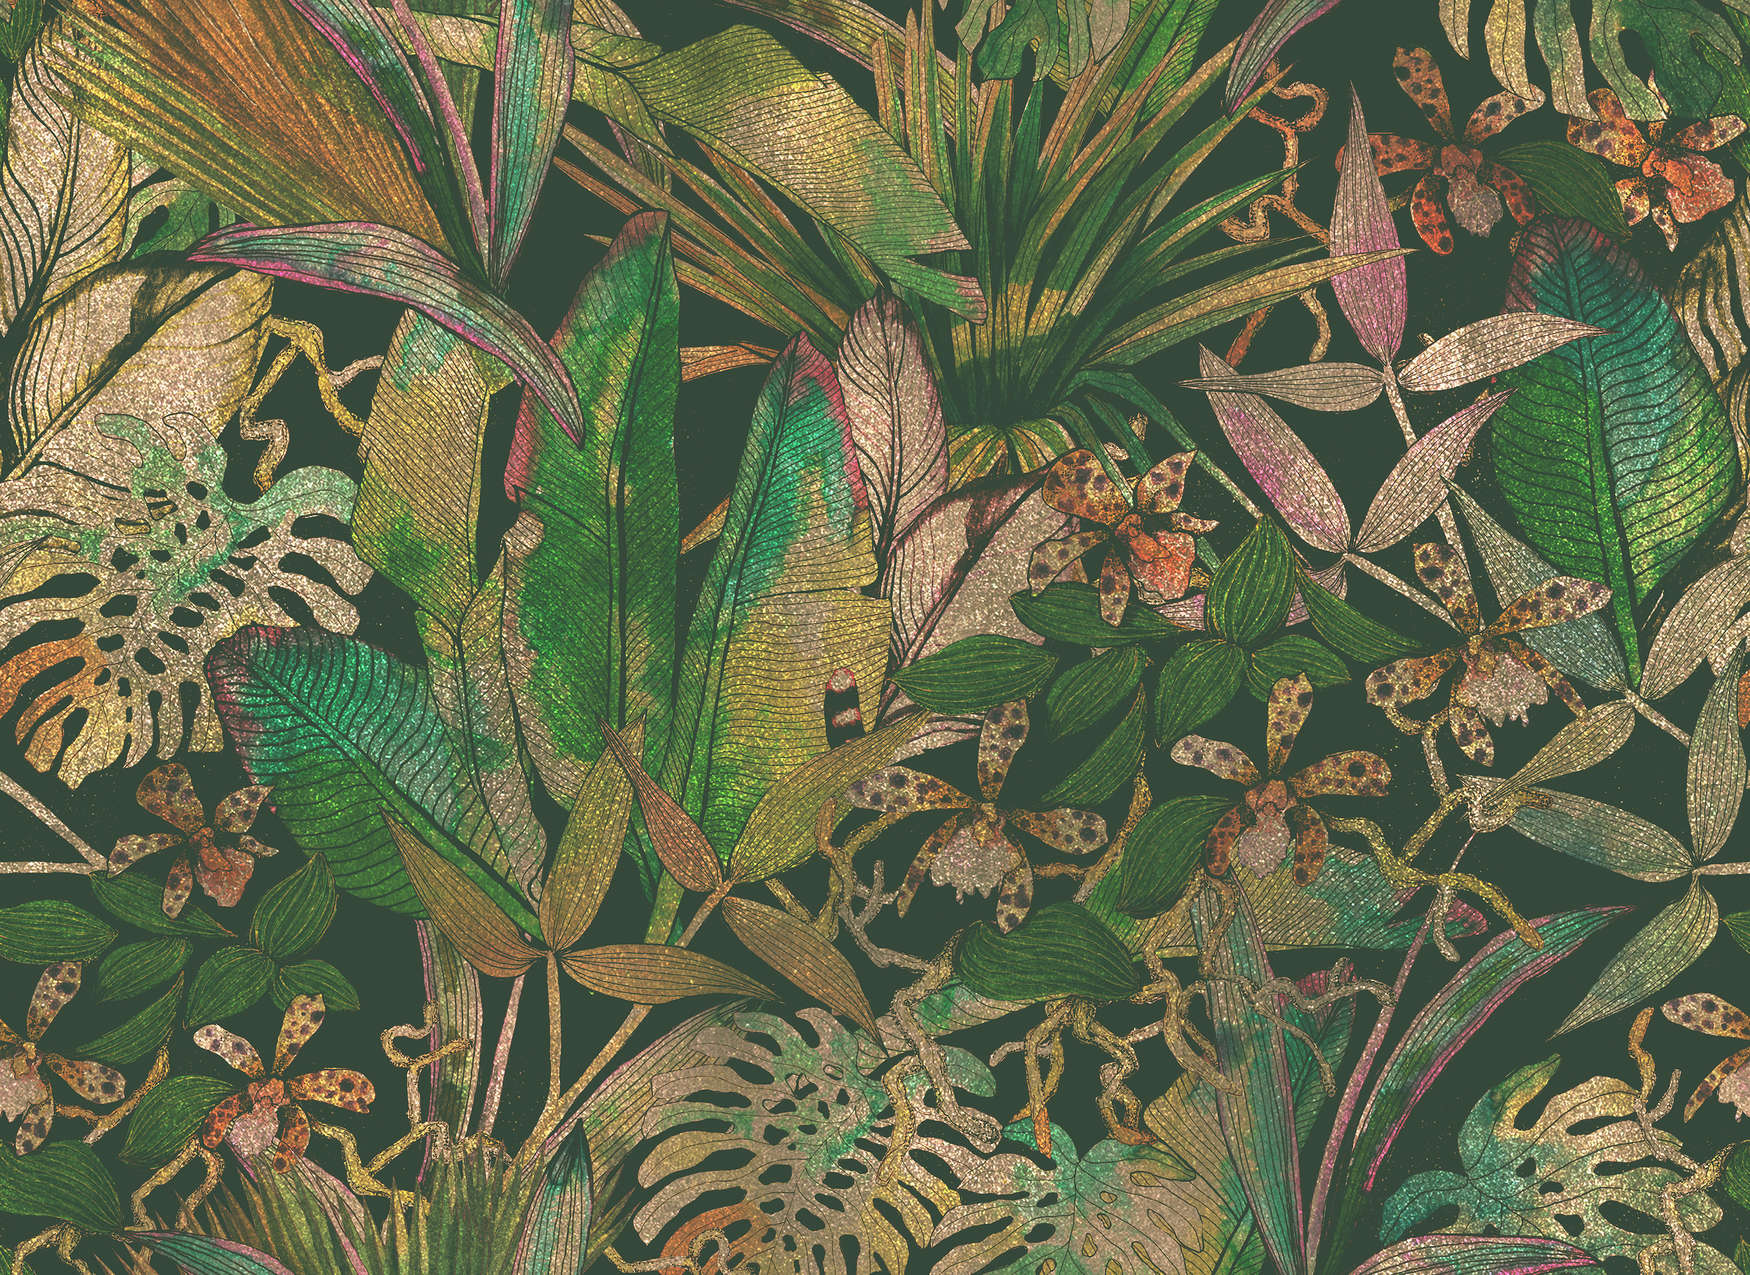             Fototapete Dschungelmotiv mit Blättern & Blumen – Grün, Beige
        